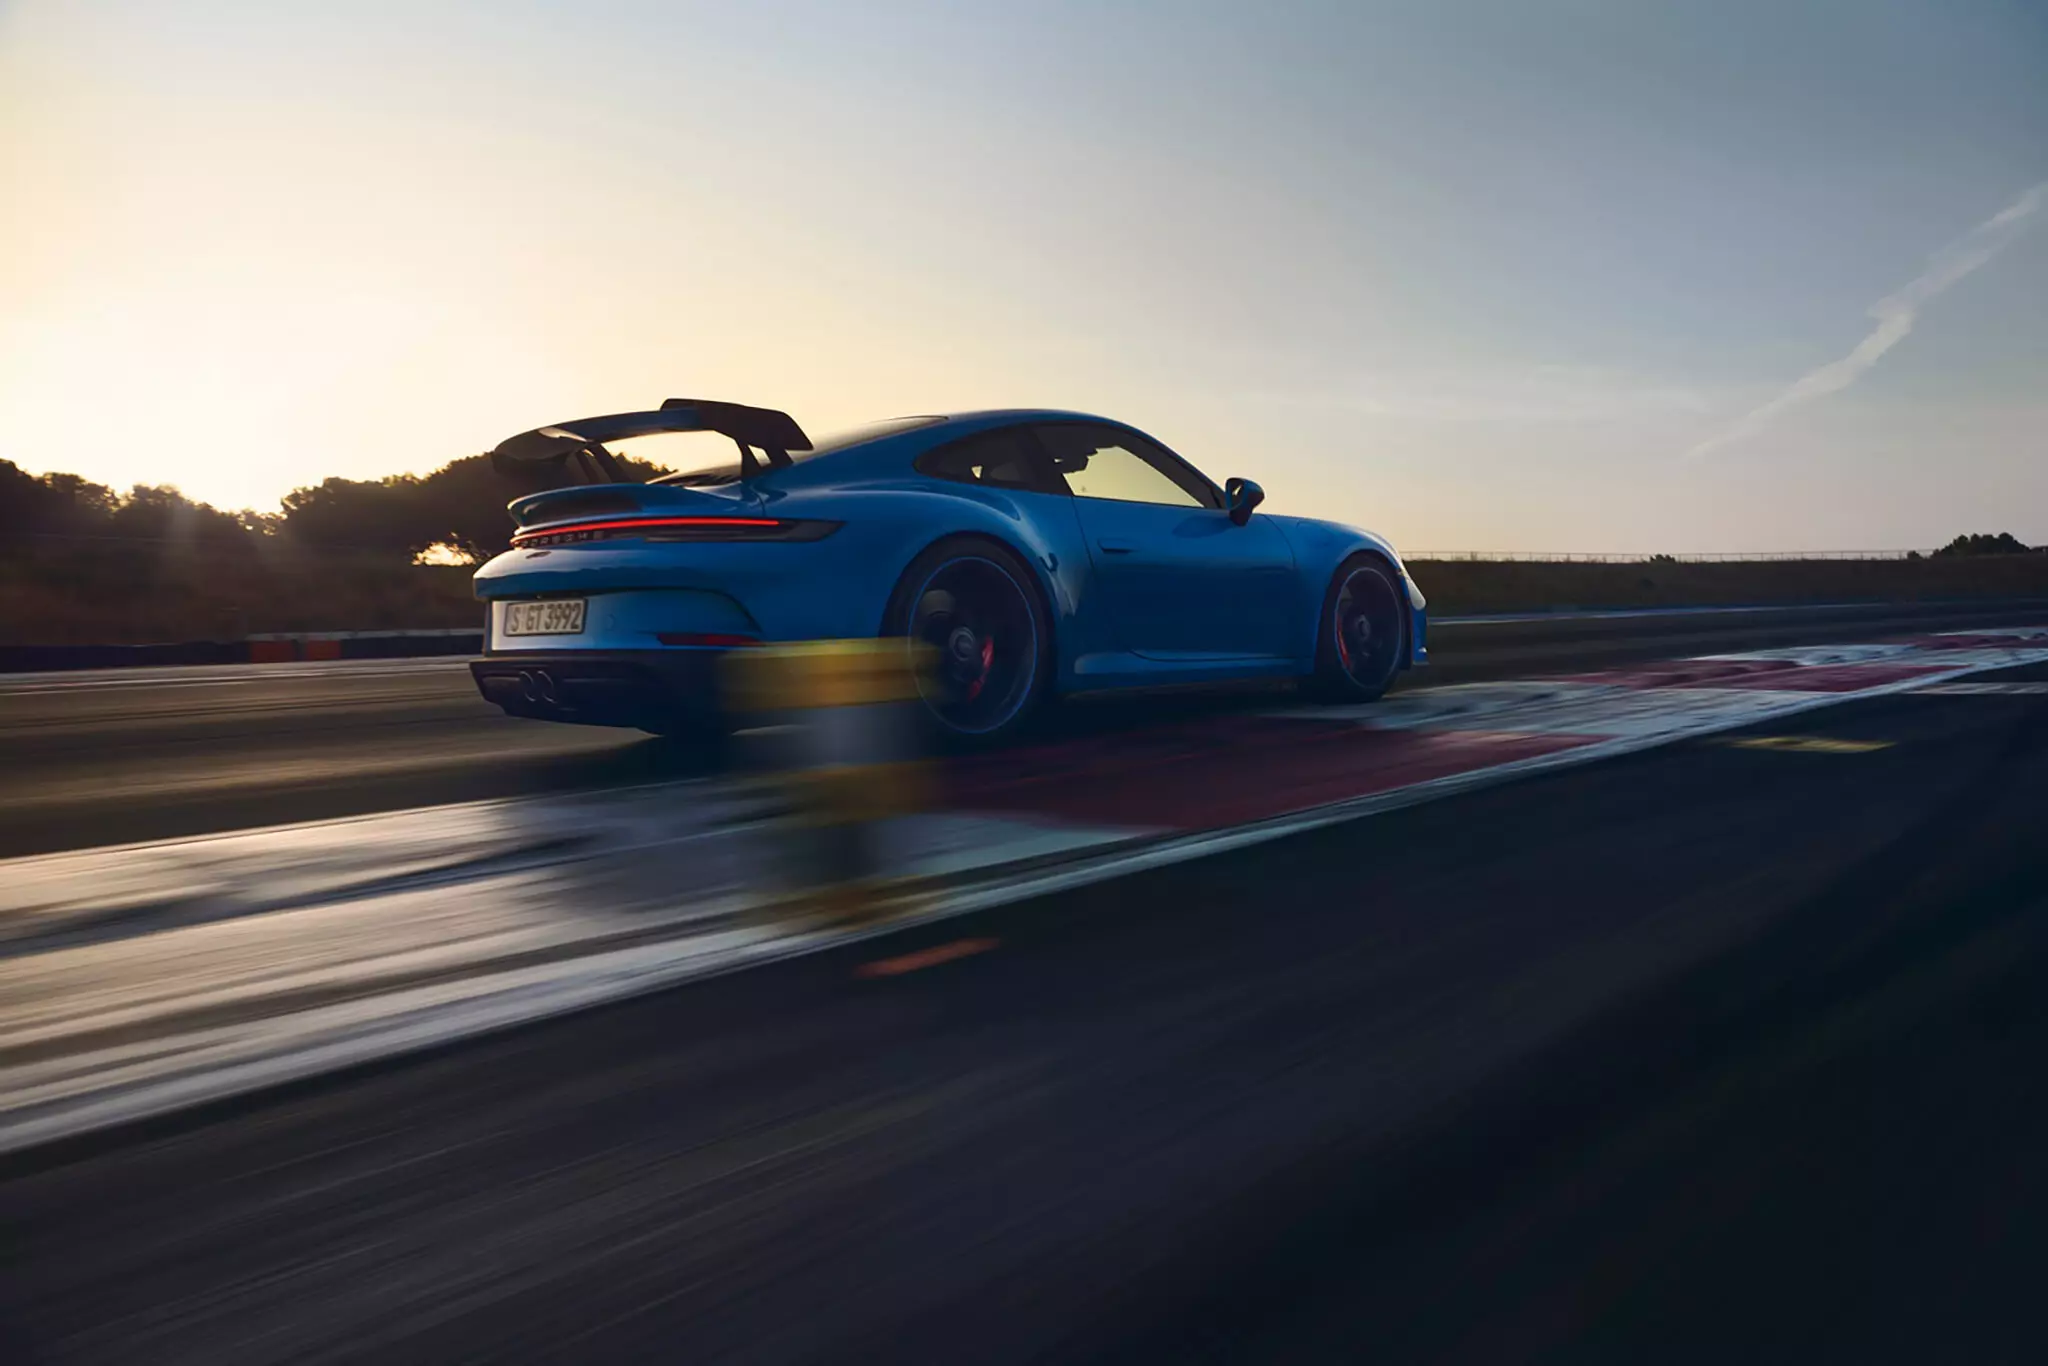 Efa fantatsika ny Porsche 911 GT3 (992) vaovao. Ny antsipiriany rehetra 863_2